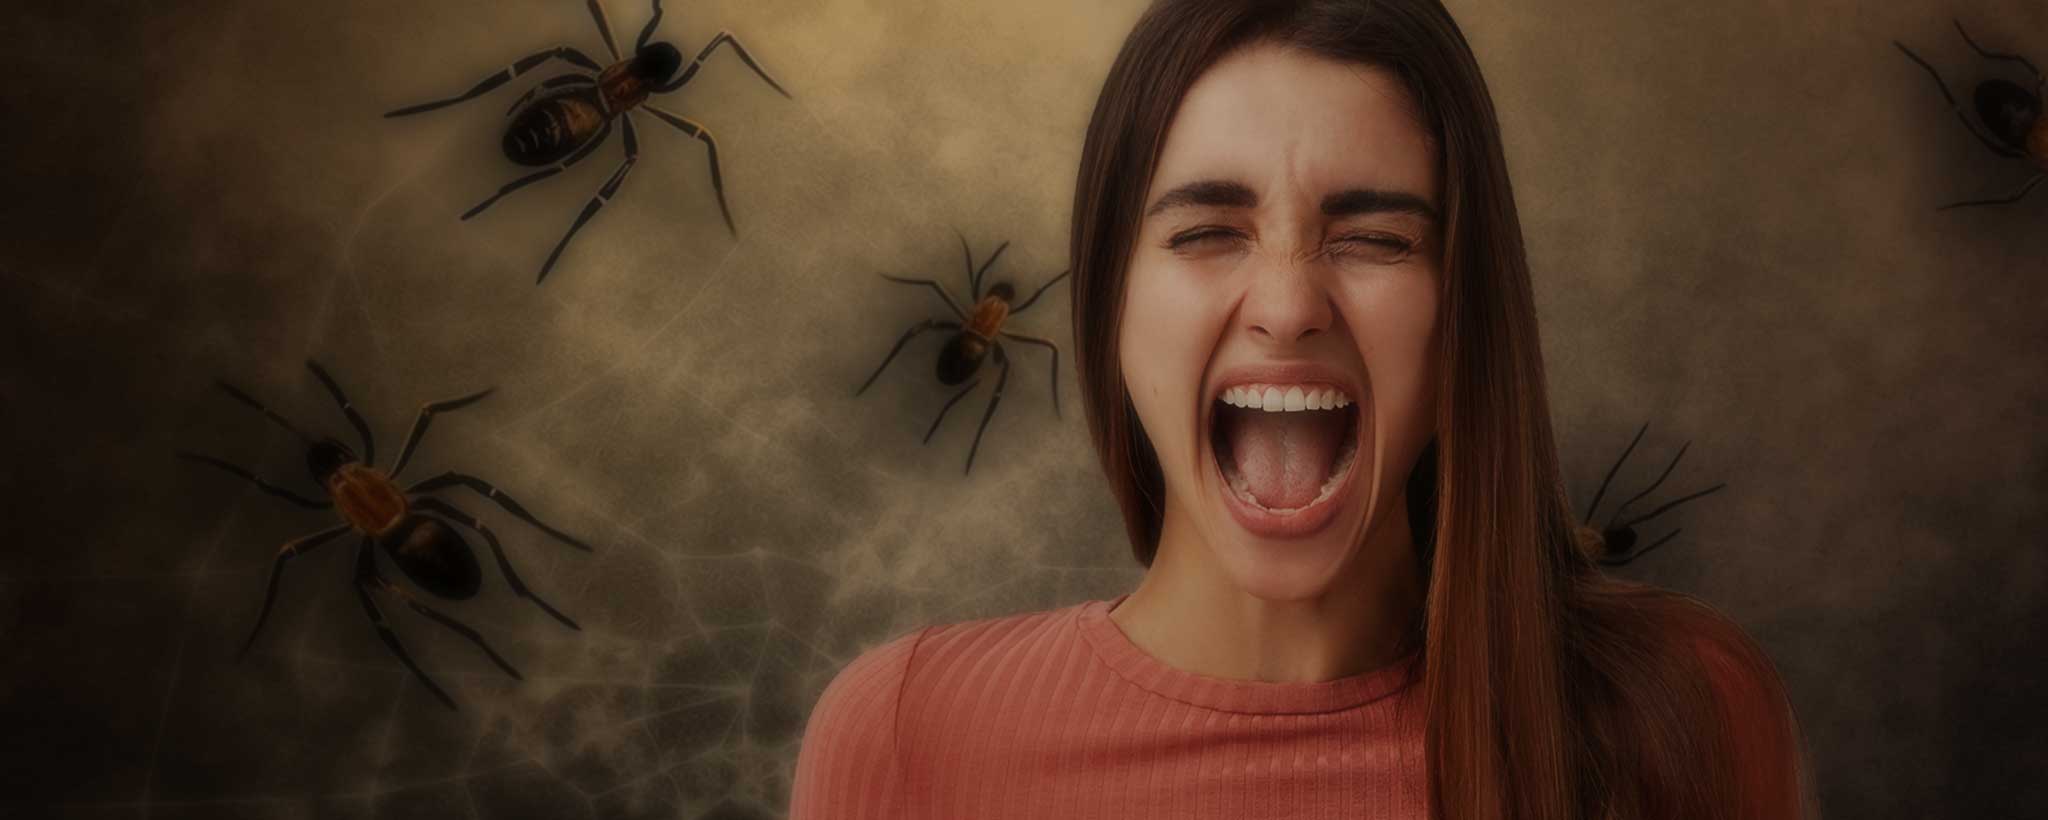 'Arachnophobia screaming female'